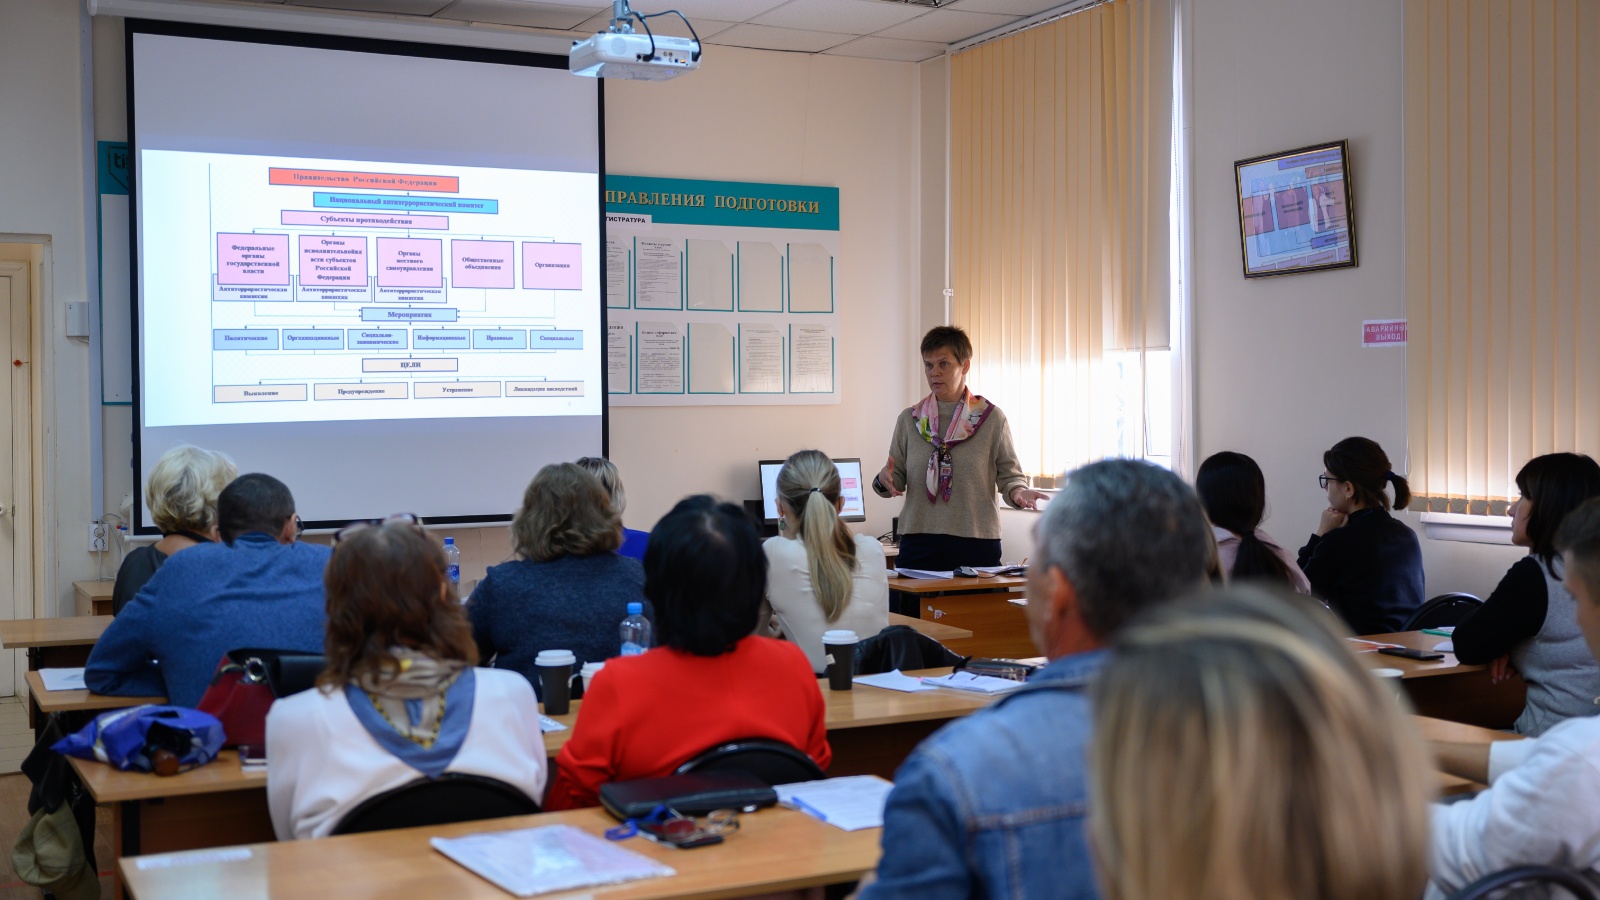 Республиканский ресурсный. Профессиональное образование. Центр занятости проводит обучение. Ресурсные центры в Татарстане фото.